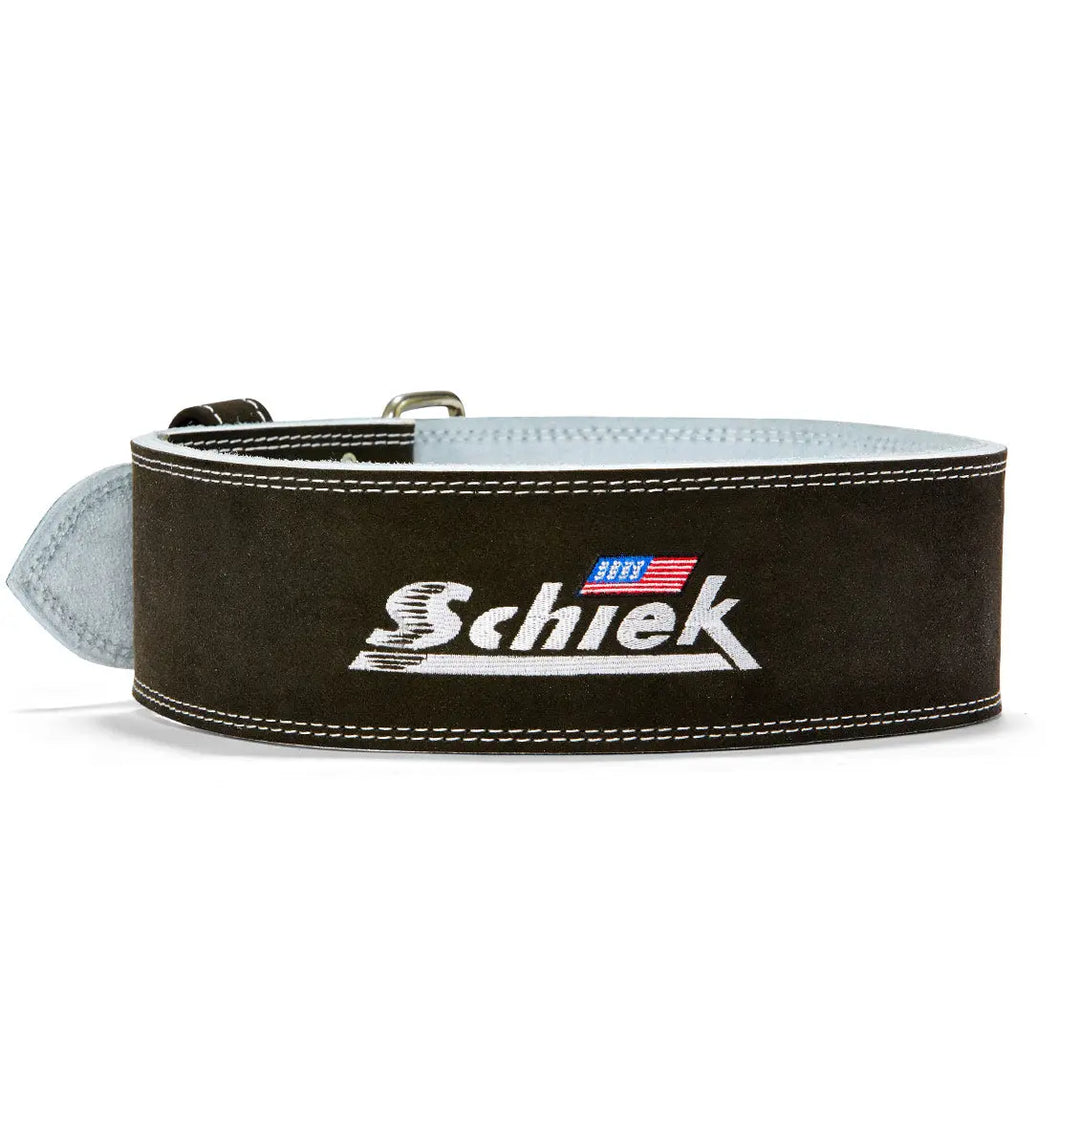 L6010 Competition Power Belt - Double Prong - Schiek Sports